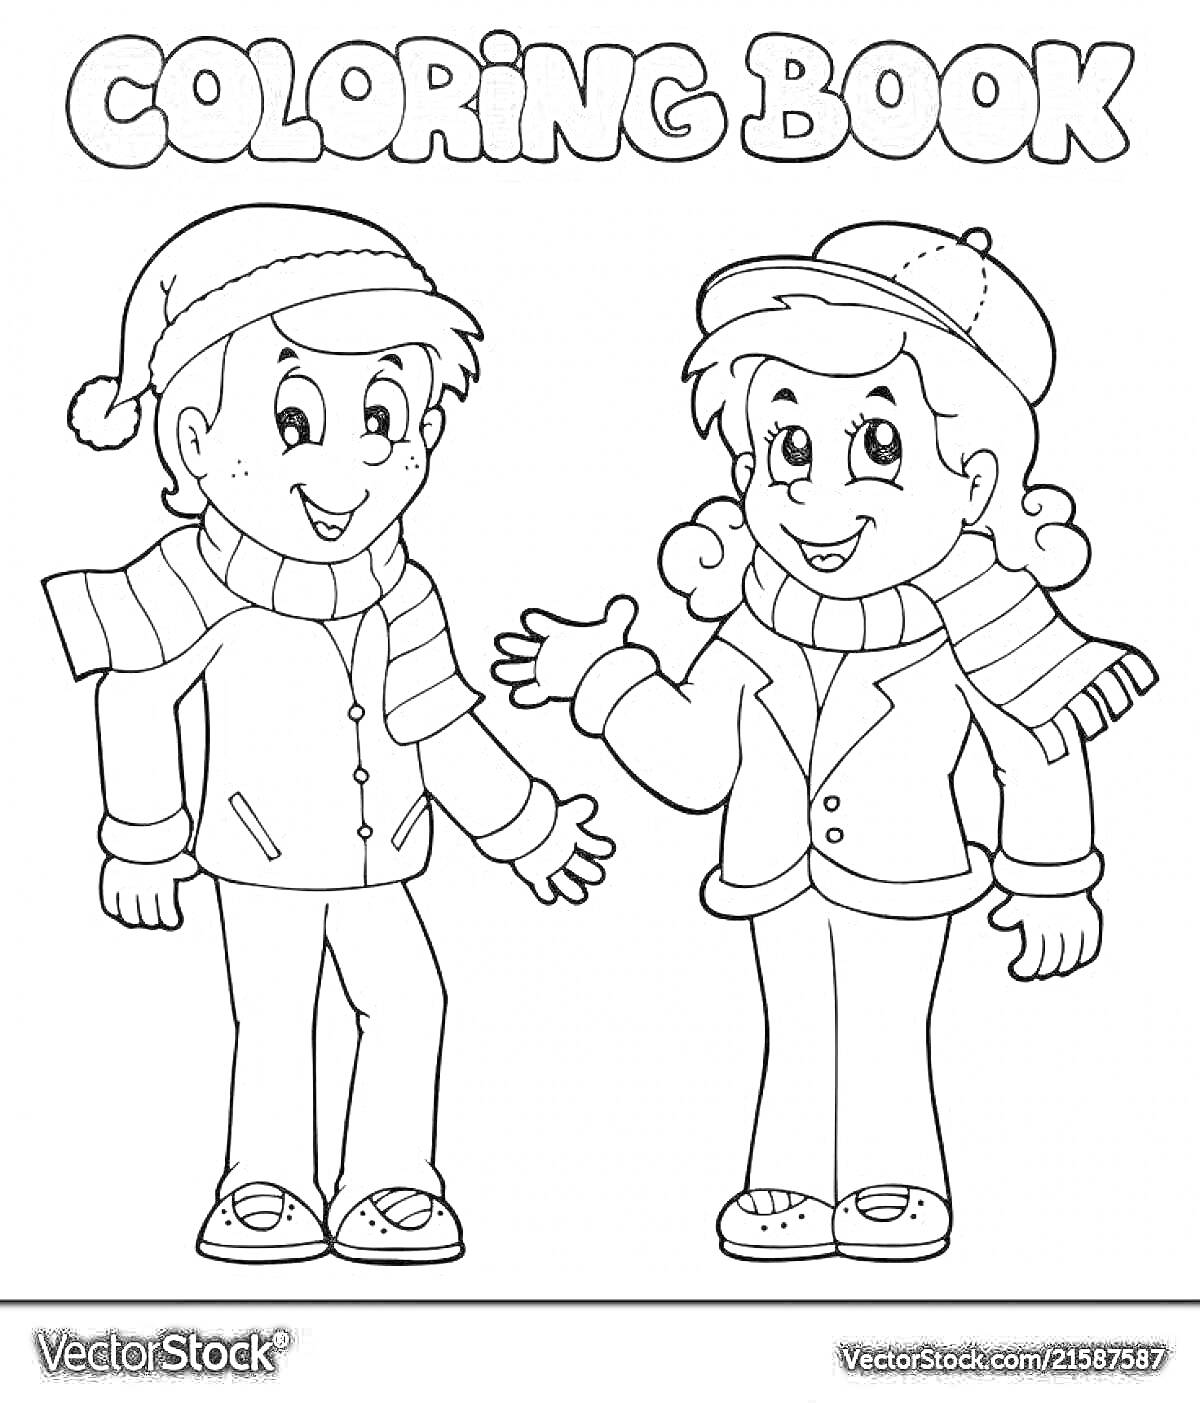 Раскраска Мальчик и девочка в зимней одежде, мальчик в шапке с помпоном и куртке, девочка в шапке и куртке с шарфом, текст 